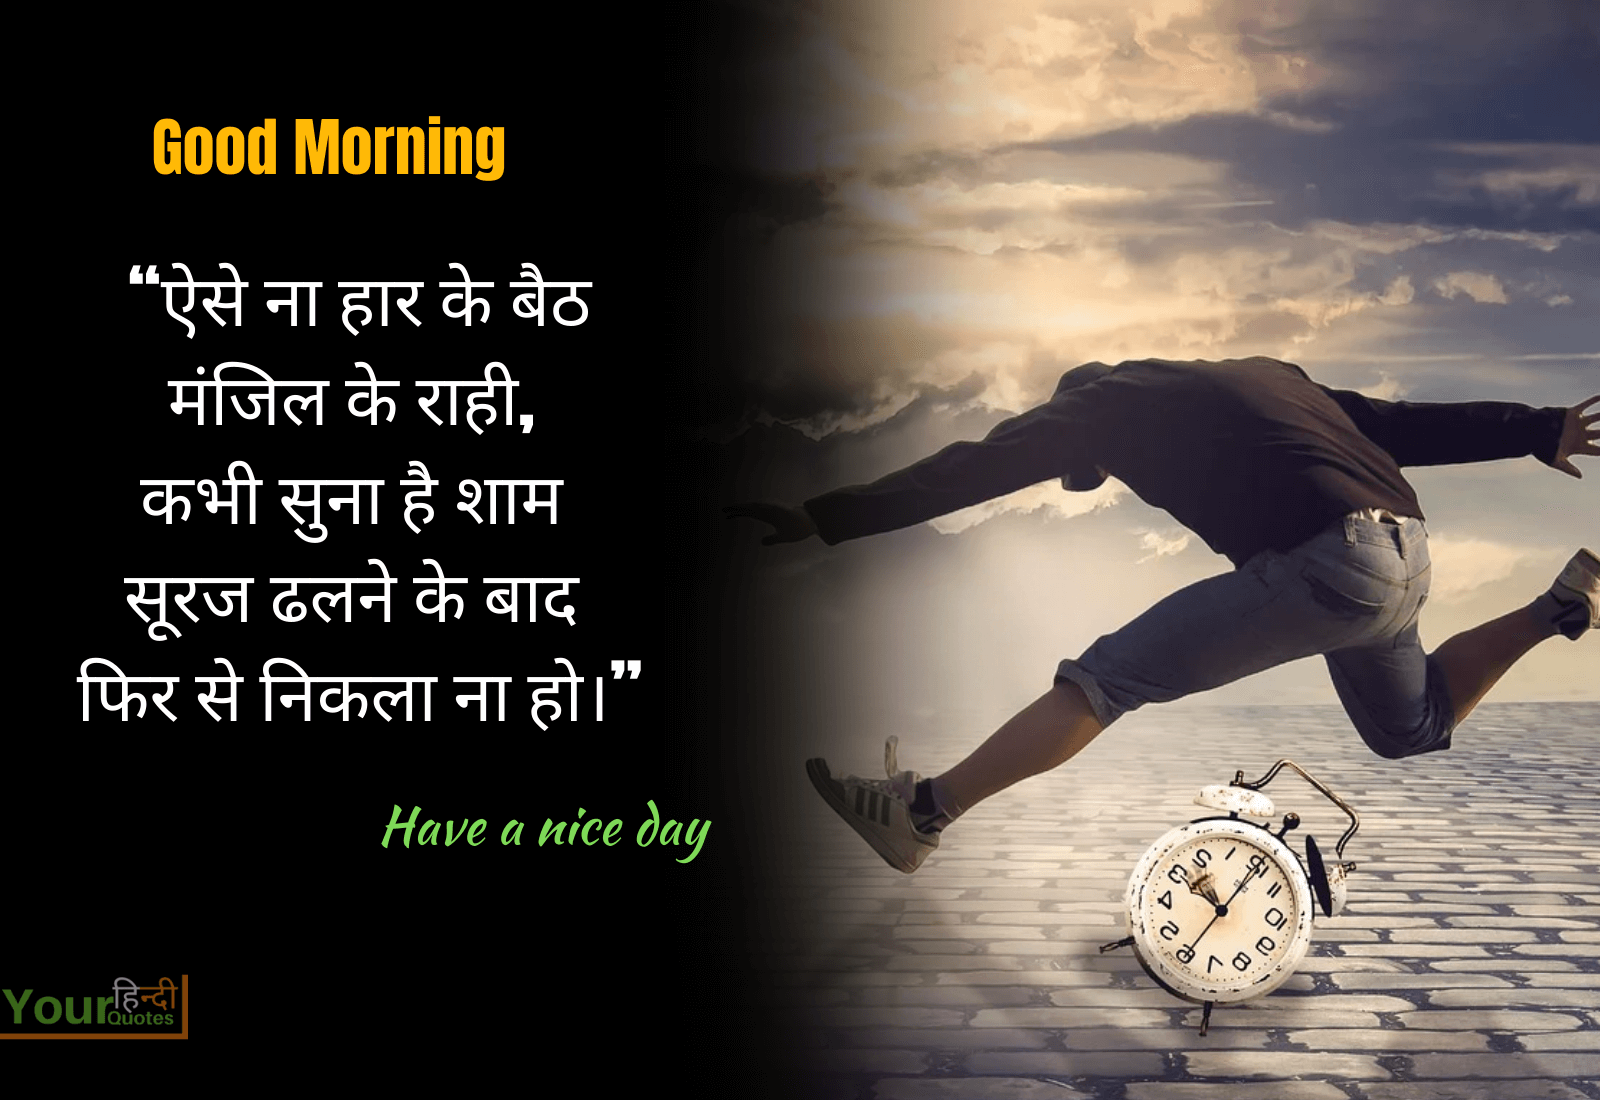 Good Morning Hindi Images